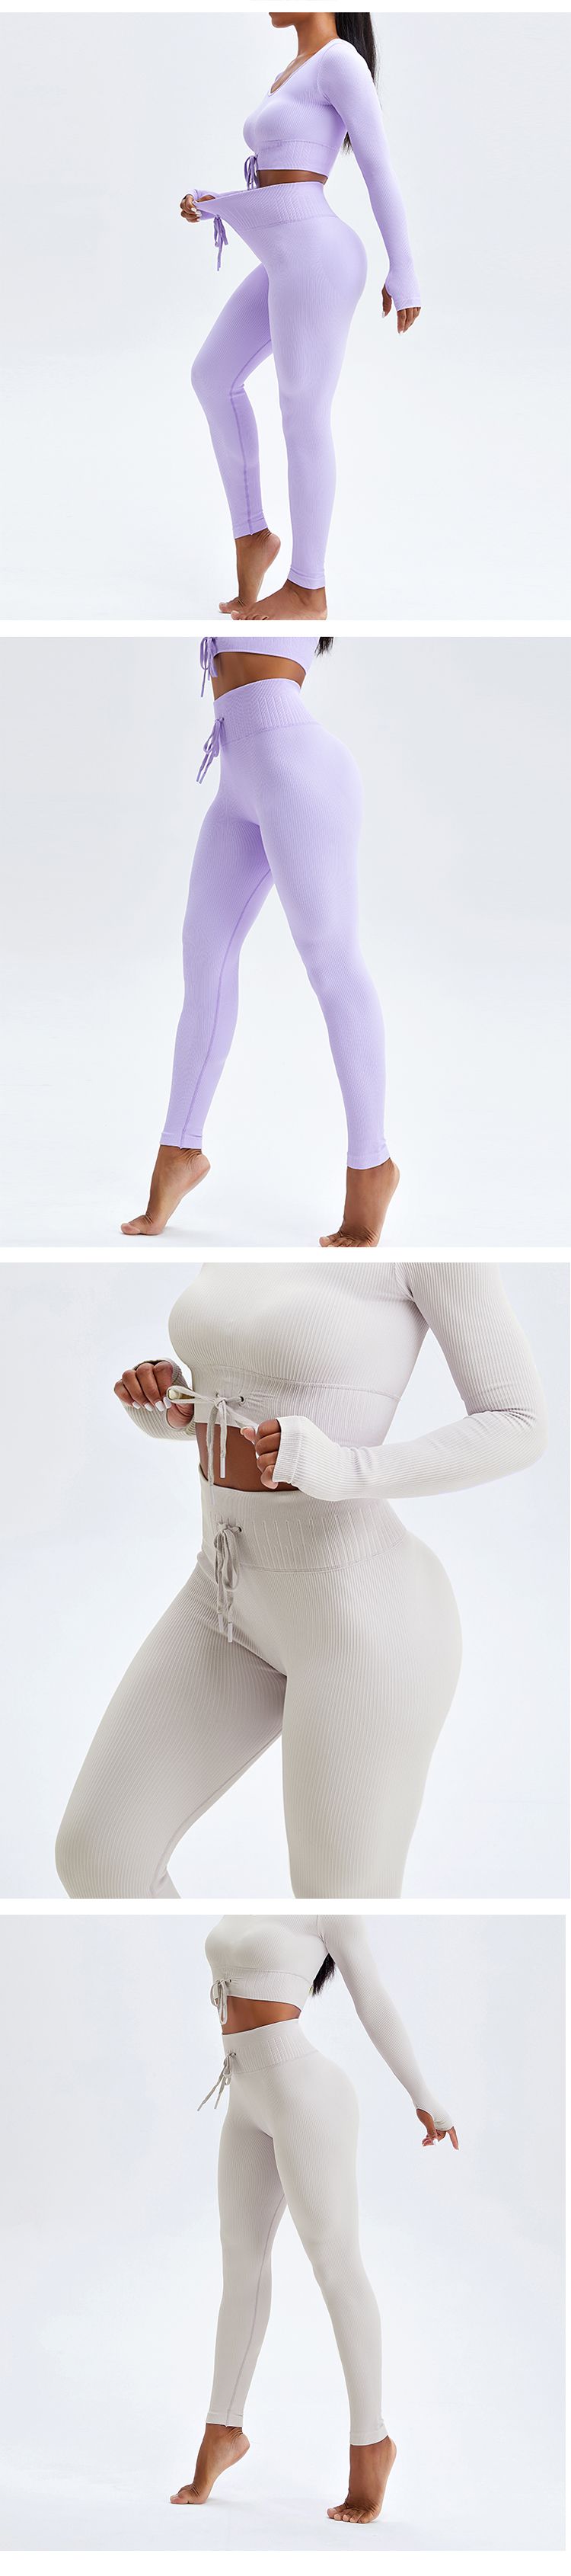 Threaded Strap Yoga leggings